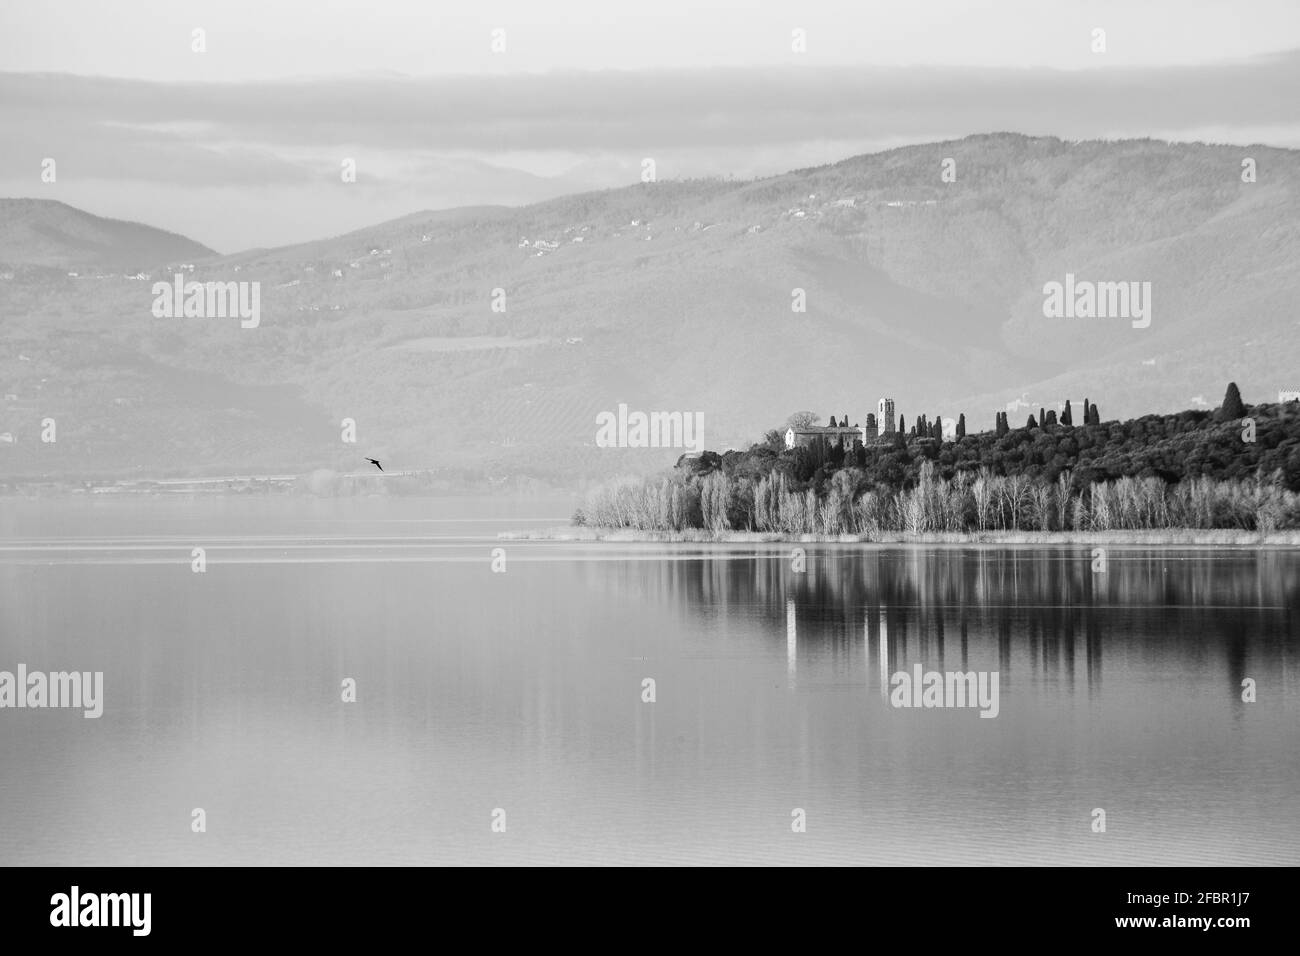 Une vue parfaitement symétrique d'un lac, avec des réflexions sur l'eau Banque D'Images